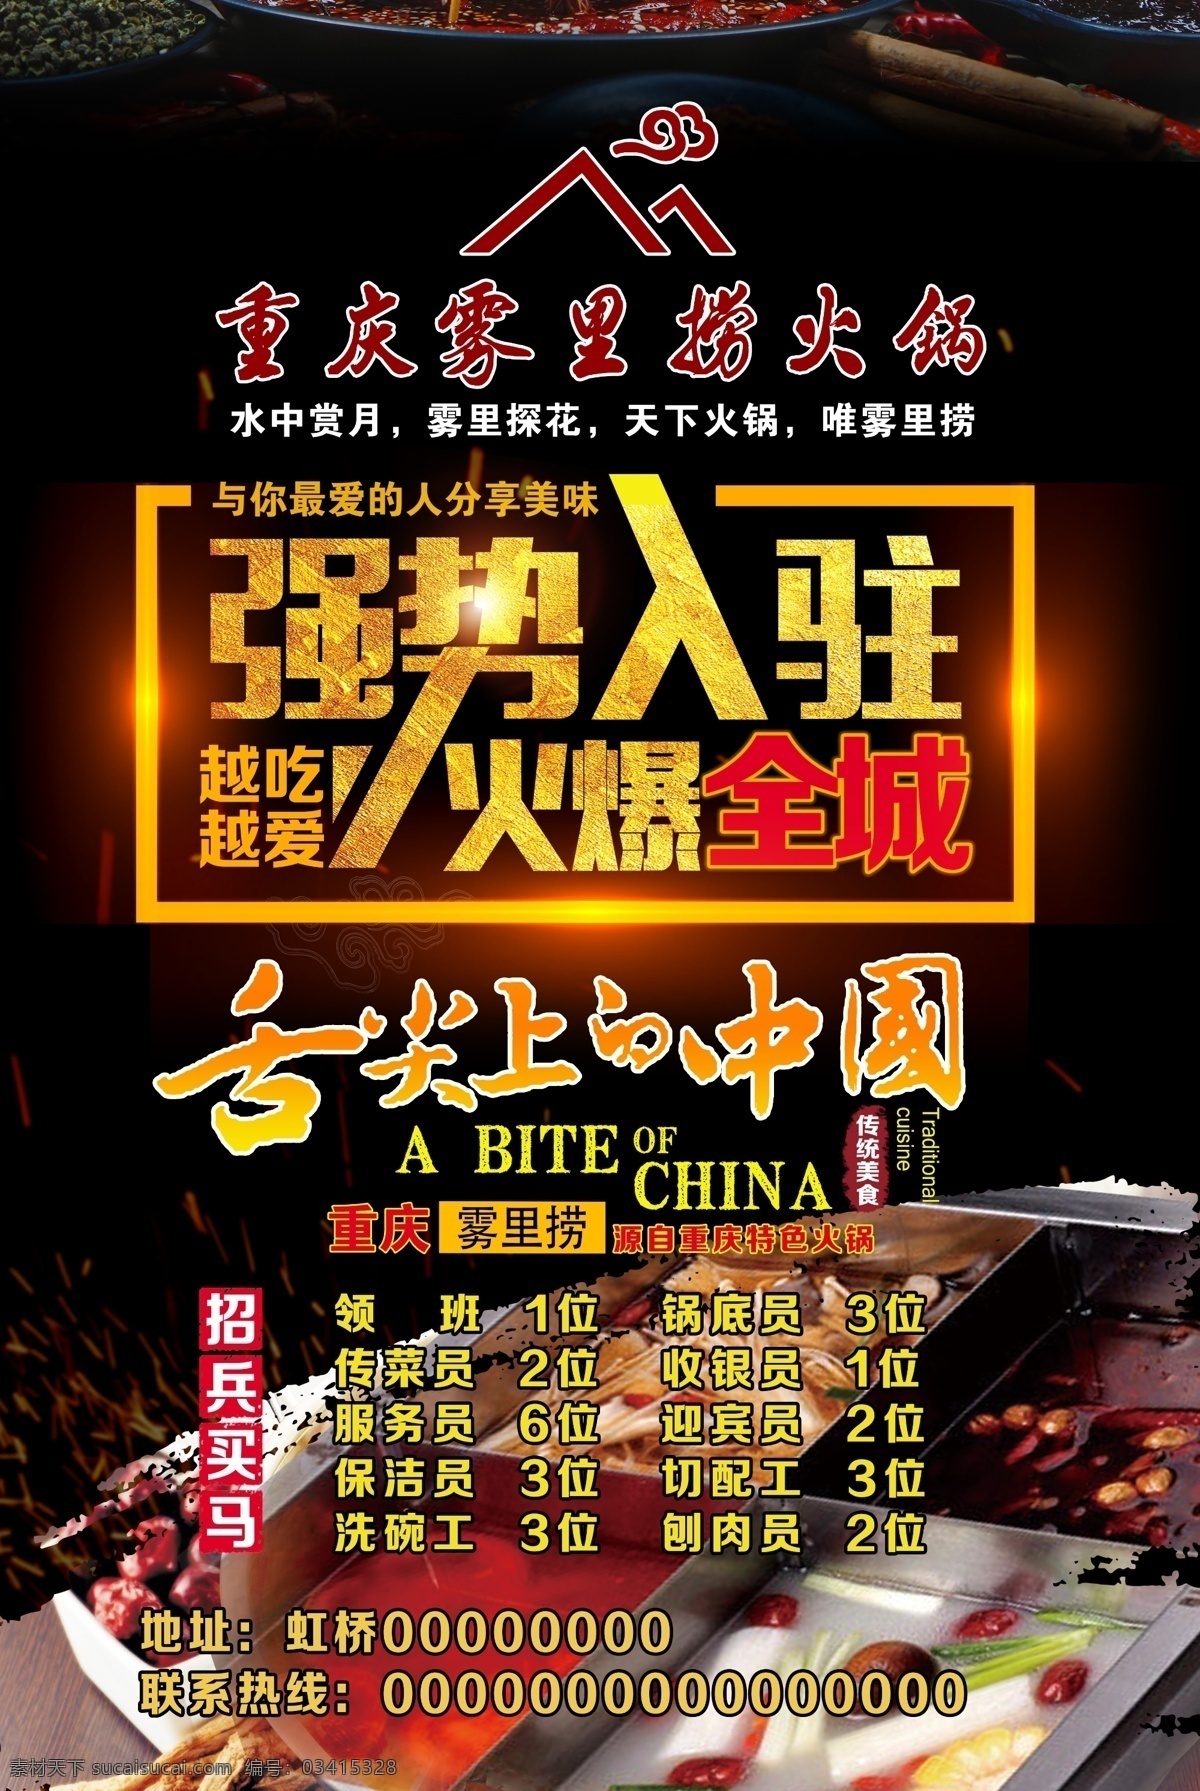 火锅招聘 火锅广告 强势入驻 舌尖上的中国 中国美食